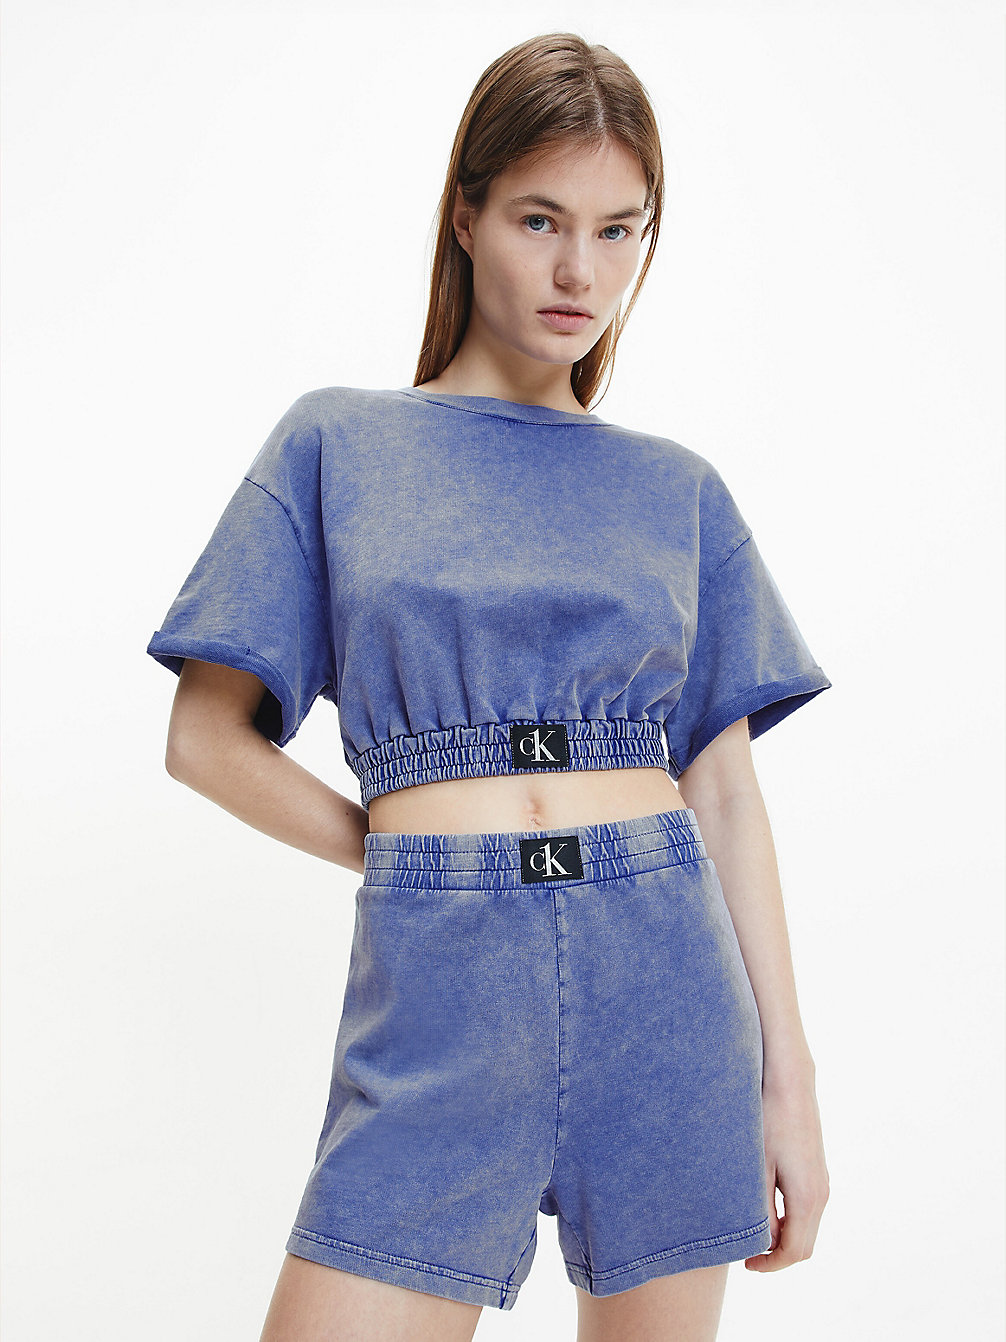 WILD BLUEBELL T-Shirt De Plage Court - CK Authentic undefined femmes Calvin Klein